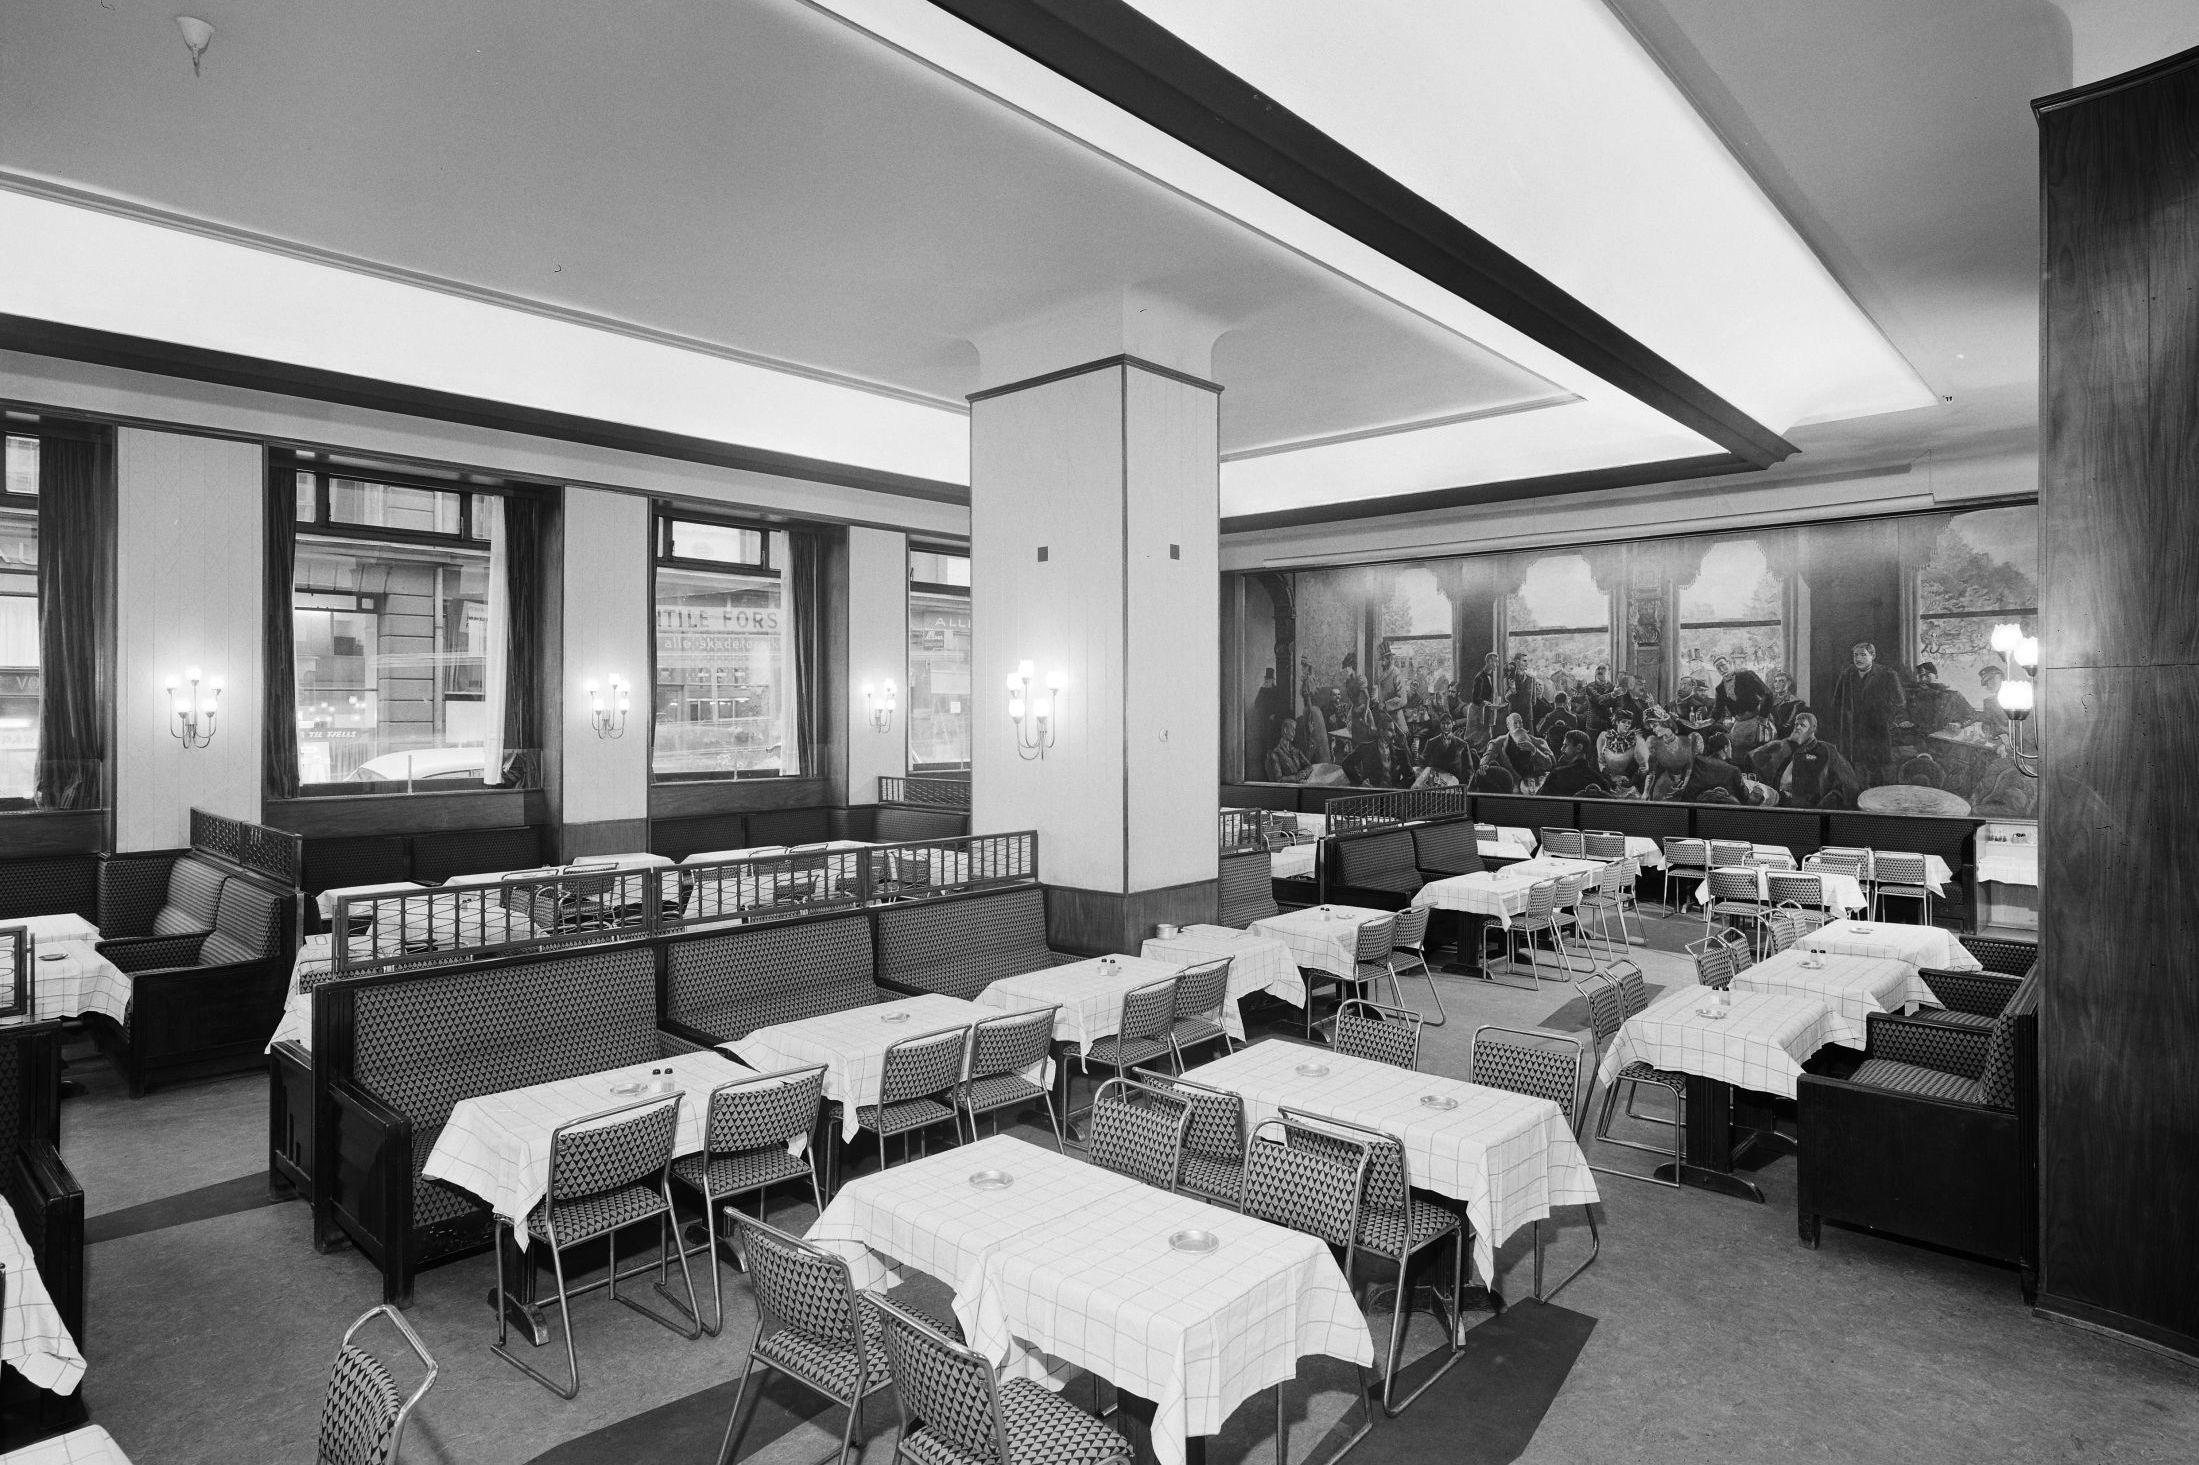 HISTORIE I VEGGENE: Maleriet i bakgrunnen ble malt i 1928. I dag lever Kristianiabohemen videre på Grand café. Bildet er fra 1961. Foto: Leif Ørnelund/Oslo Museum